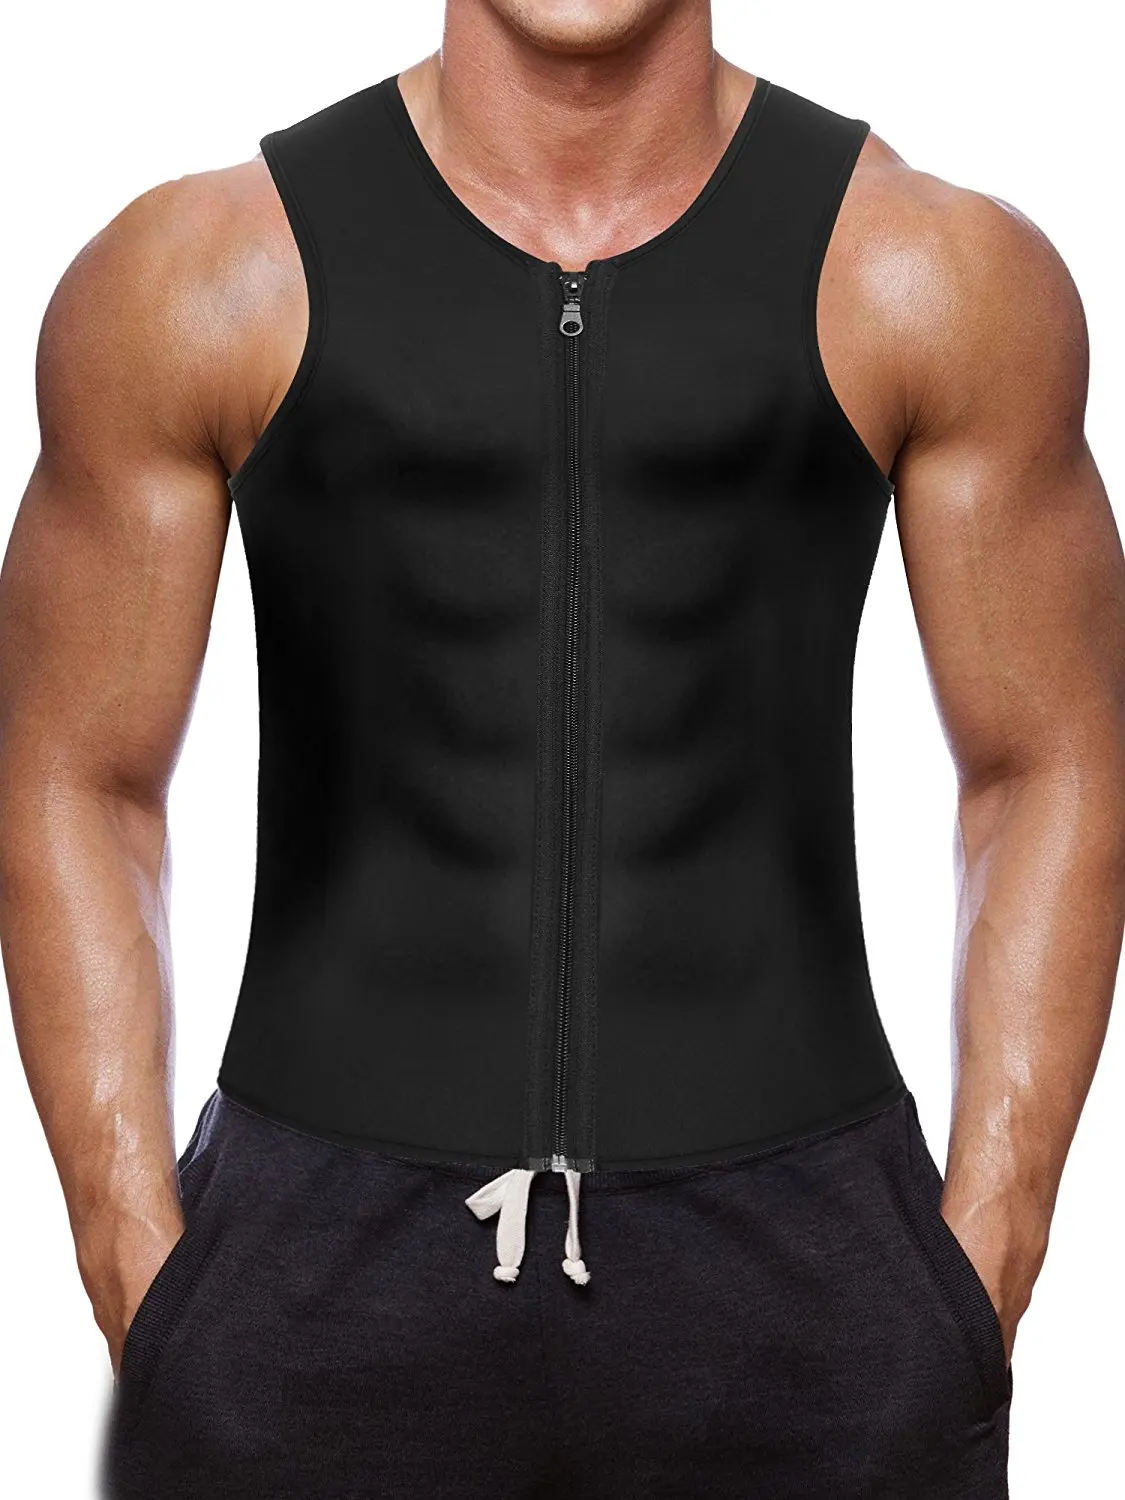 Мужской неопреновый жилет для похудения, Корректирующее белье для тренировок, шейпер для тела